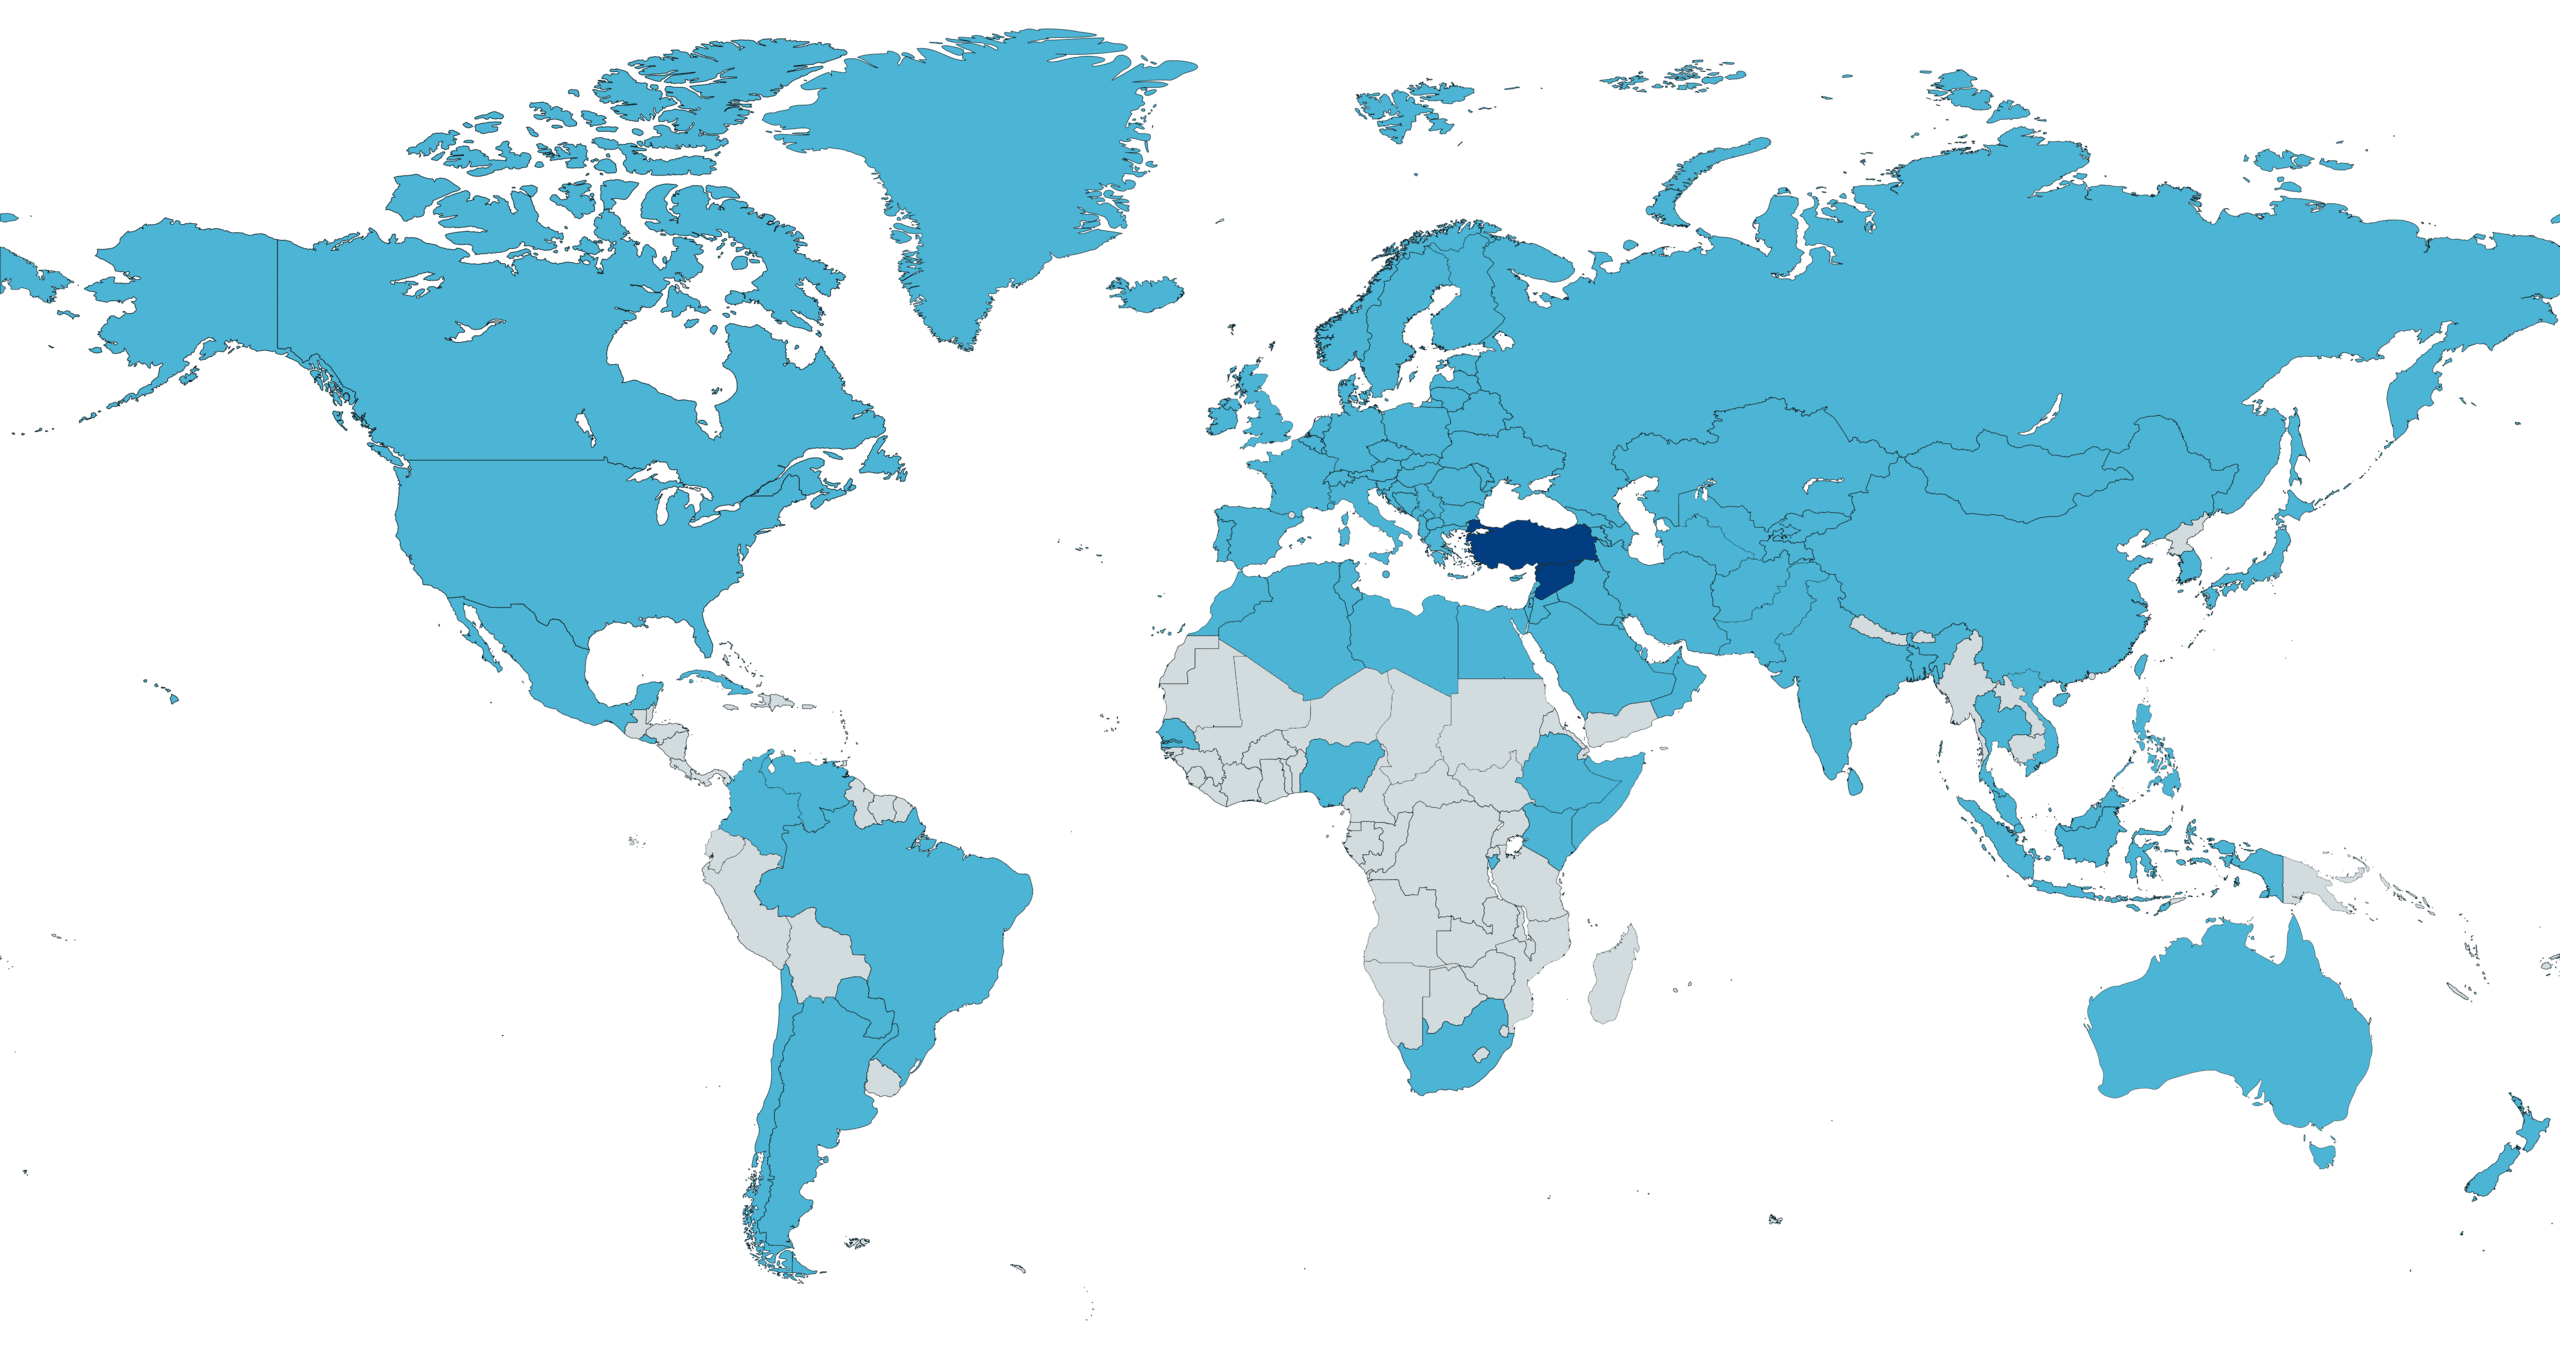 Страны, которые предложили помощь или выразили соболезнования Турции и/или Сирии после землетрясения (тёмно-синим отмечены Турция и Сирия). 9 февраля 2023 г. (Шахан Басаран, Creative Commons Attribution-Share Alike 4.0 International)